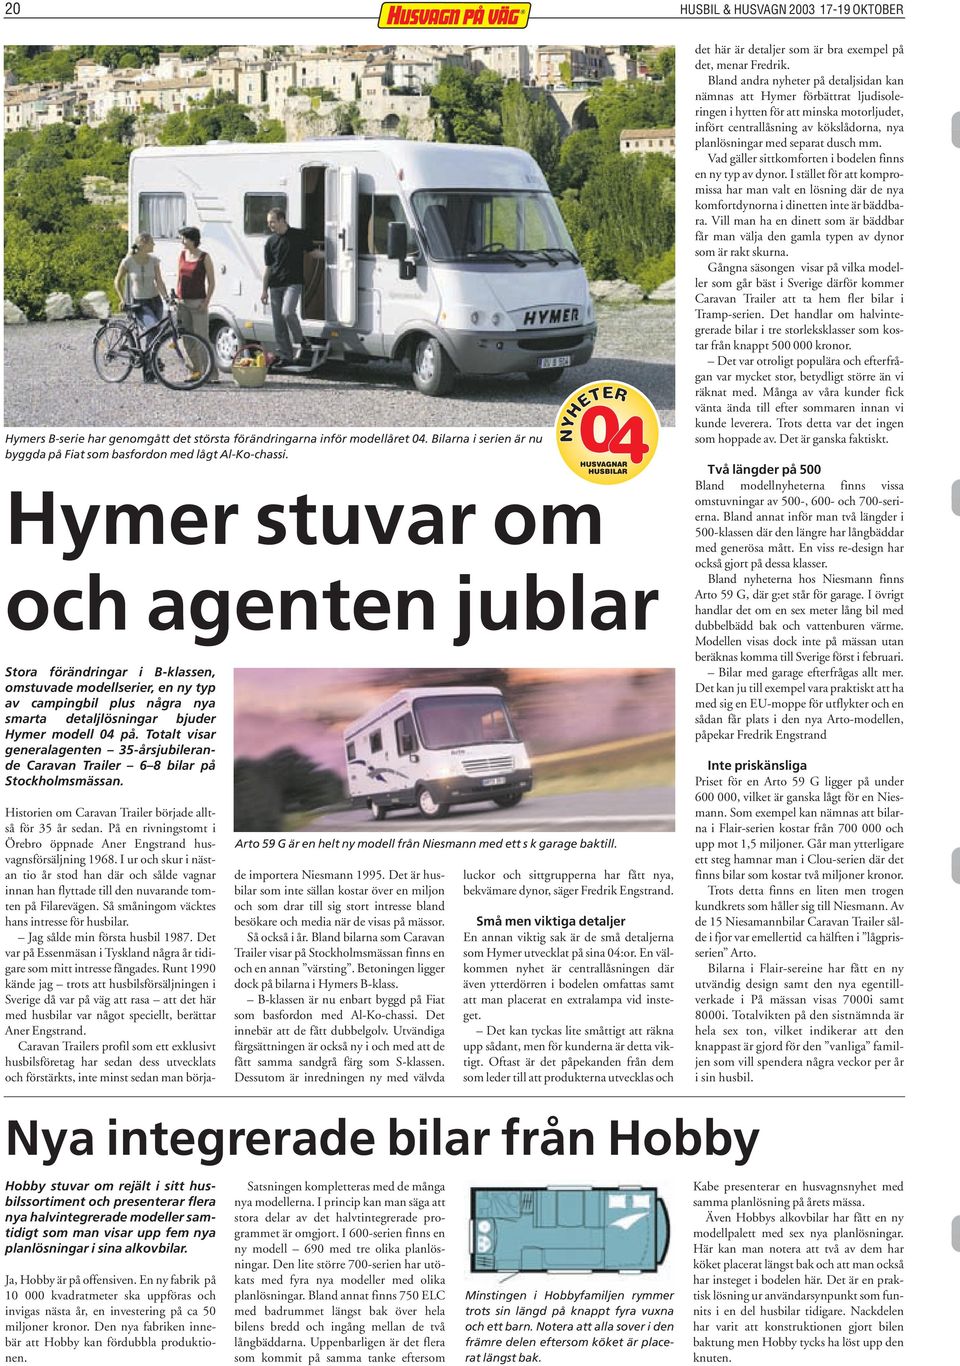 Totalt visar generalagenten 35-årsjubilerande Caravan Trailer 6 8 bilar på Stockholmsmässan. Arto 59 G är en helt ny modell från Niesmann med ett s k garage baktill.